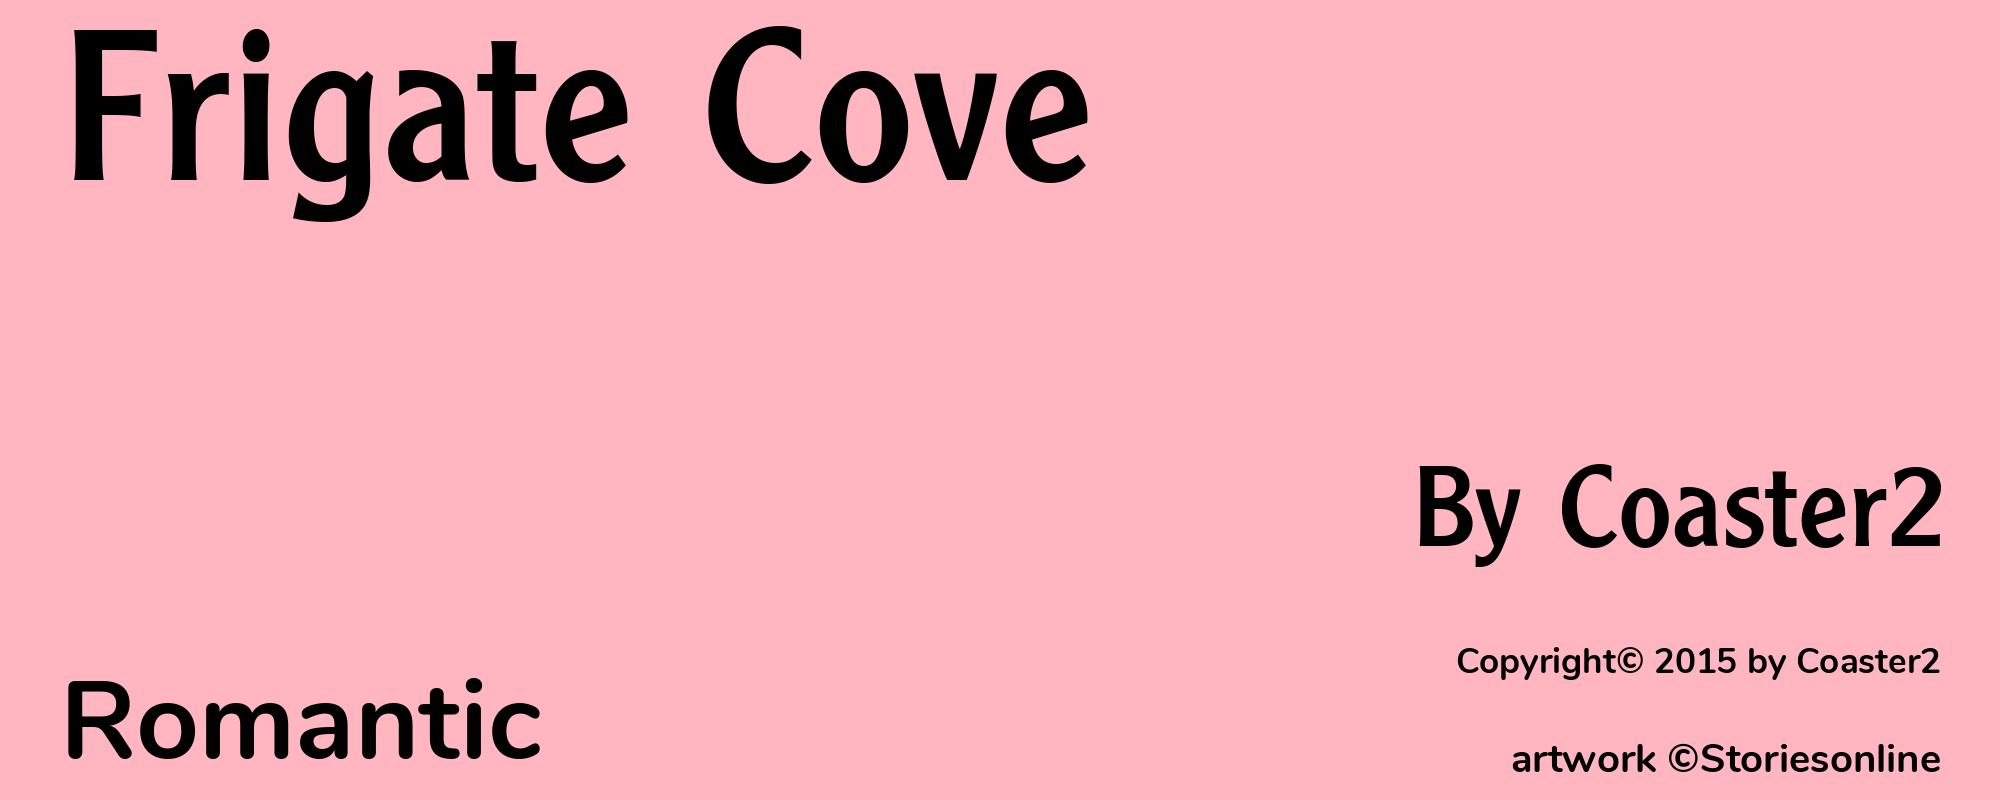 Frigate Cove - Cover